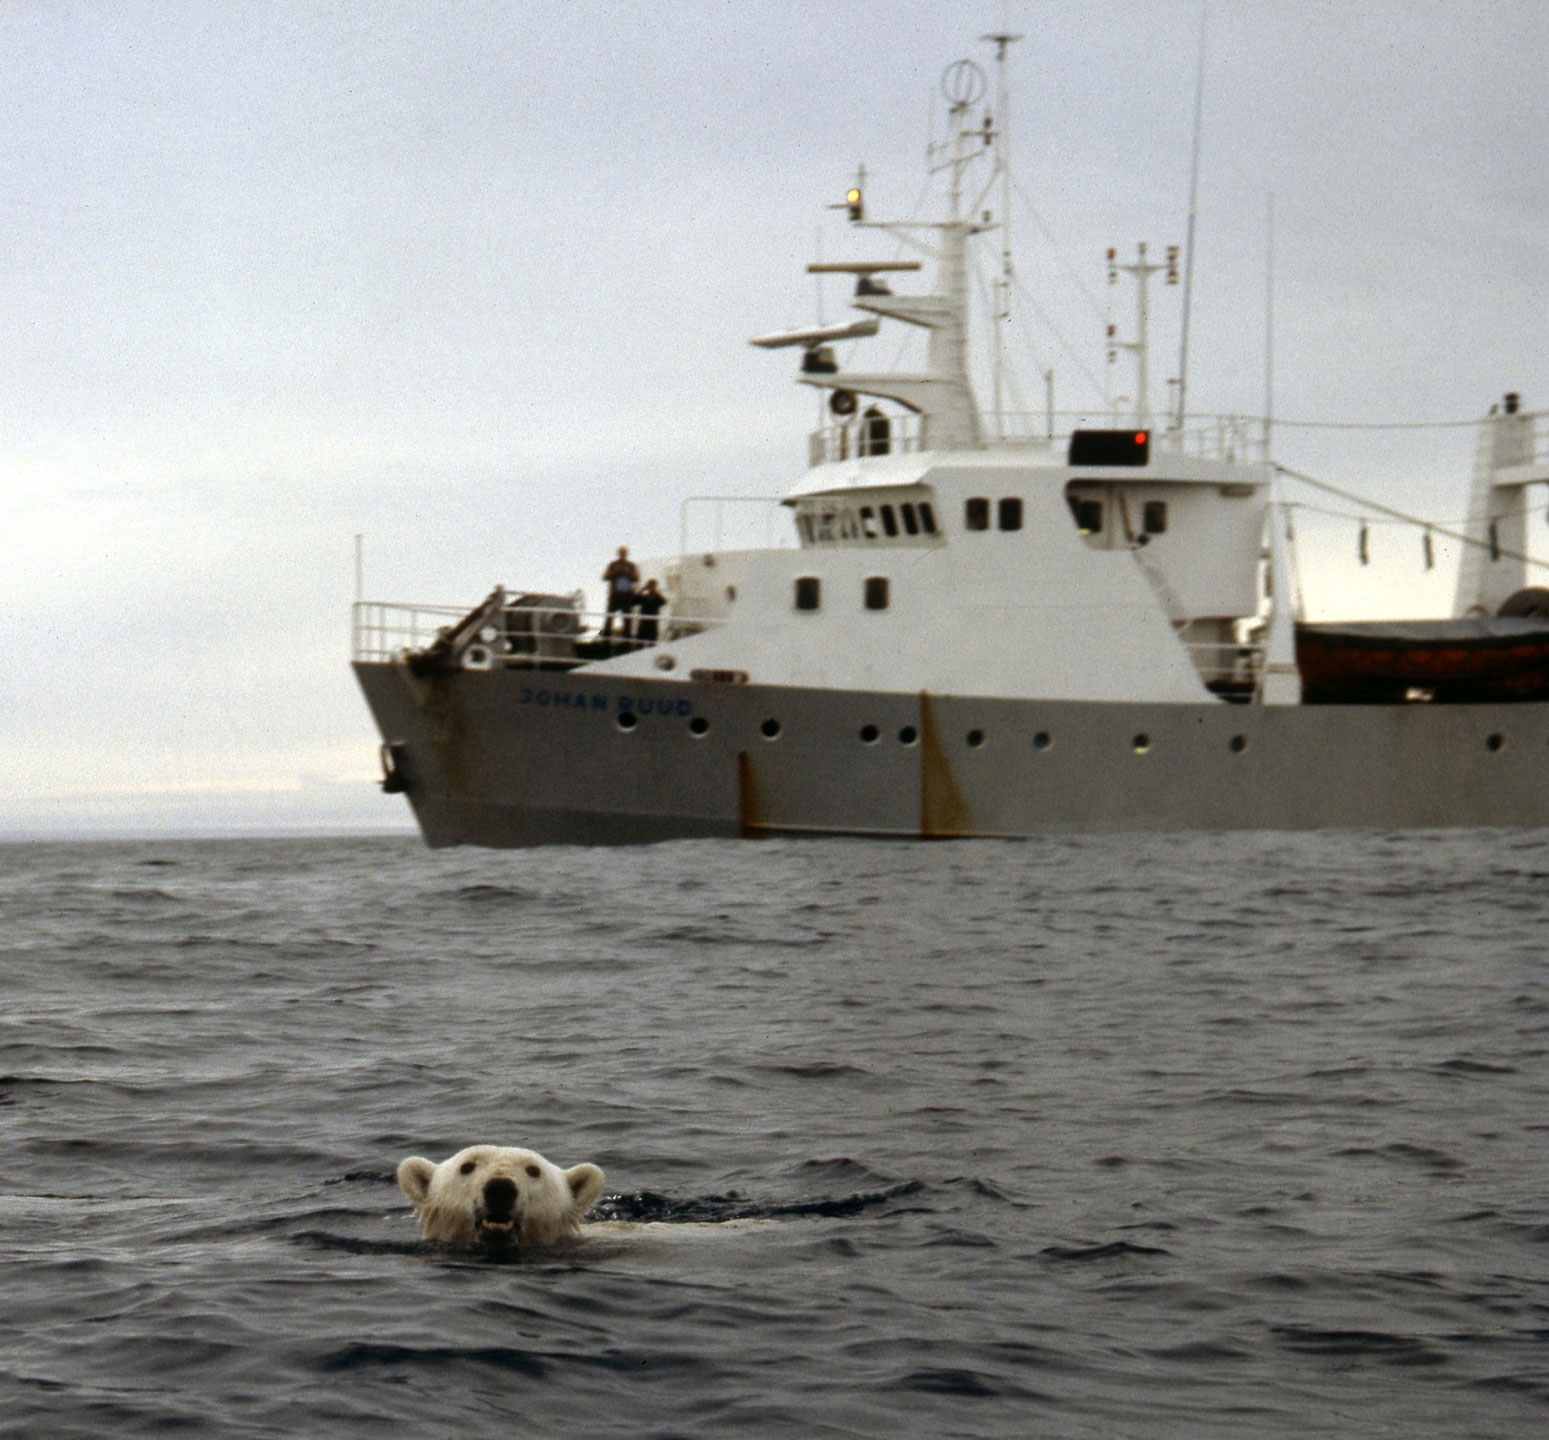 På vei nordover mot Svalbard møter F/F Johan Ruud en isbjørn på svøm i åpent hav sør for iskanten. Det er langt til land eller drivis, og sannsynligheten for at denne isbjørnen skulle overleve var nok dessverre svært liten.